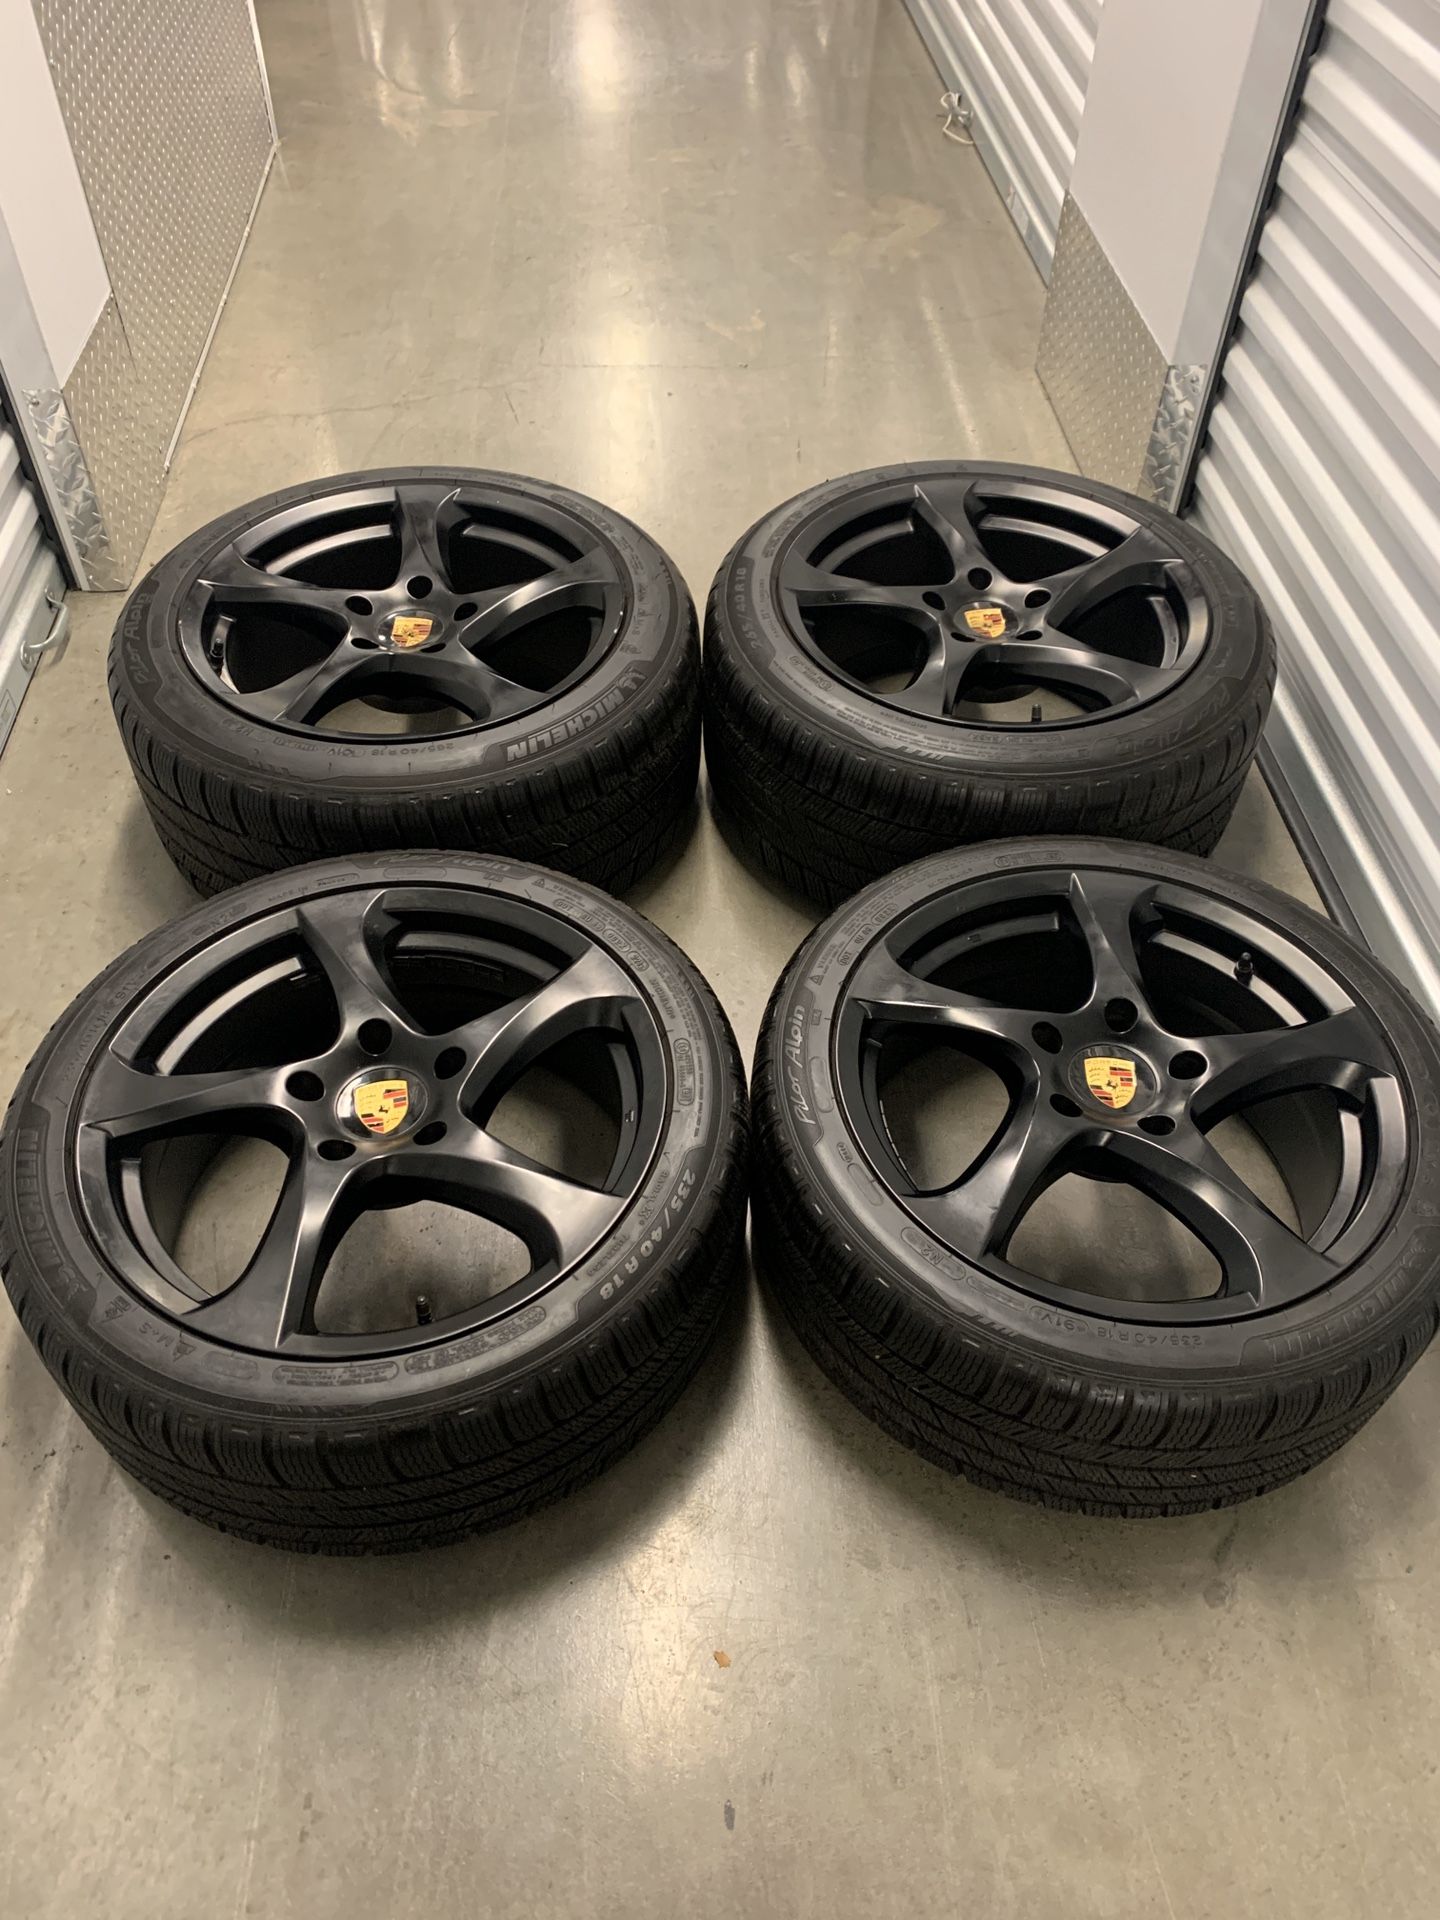 Porsche wheels staggered black 5x130 size 18 rims